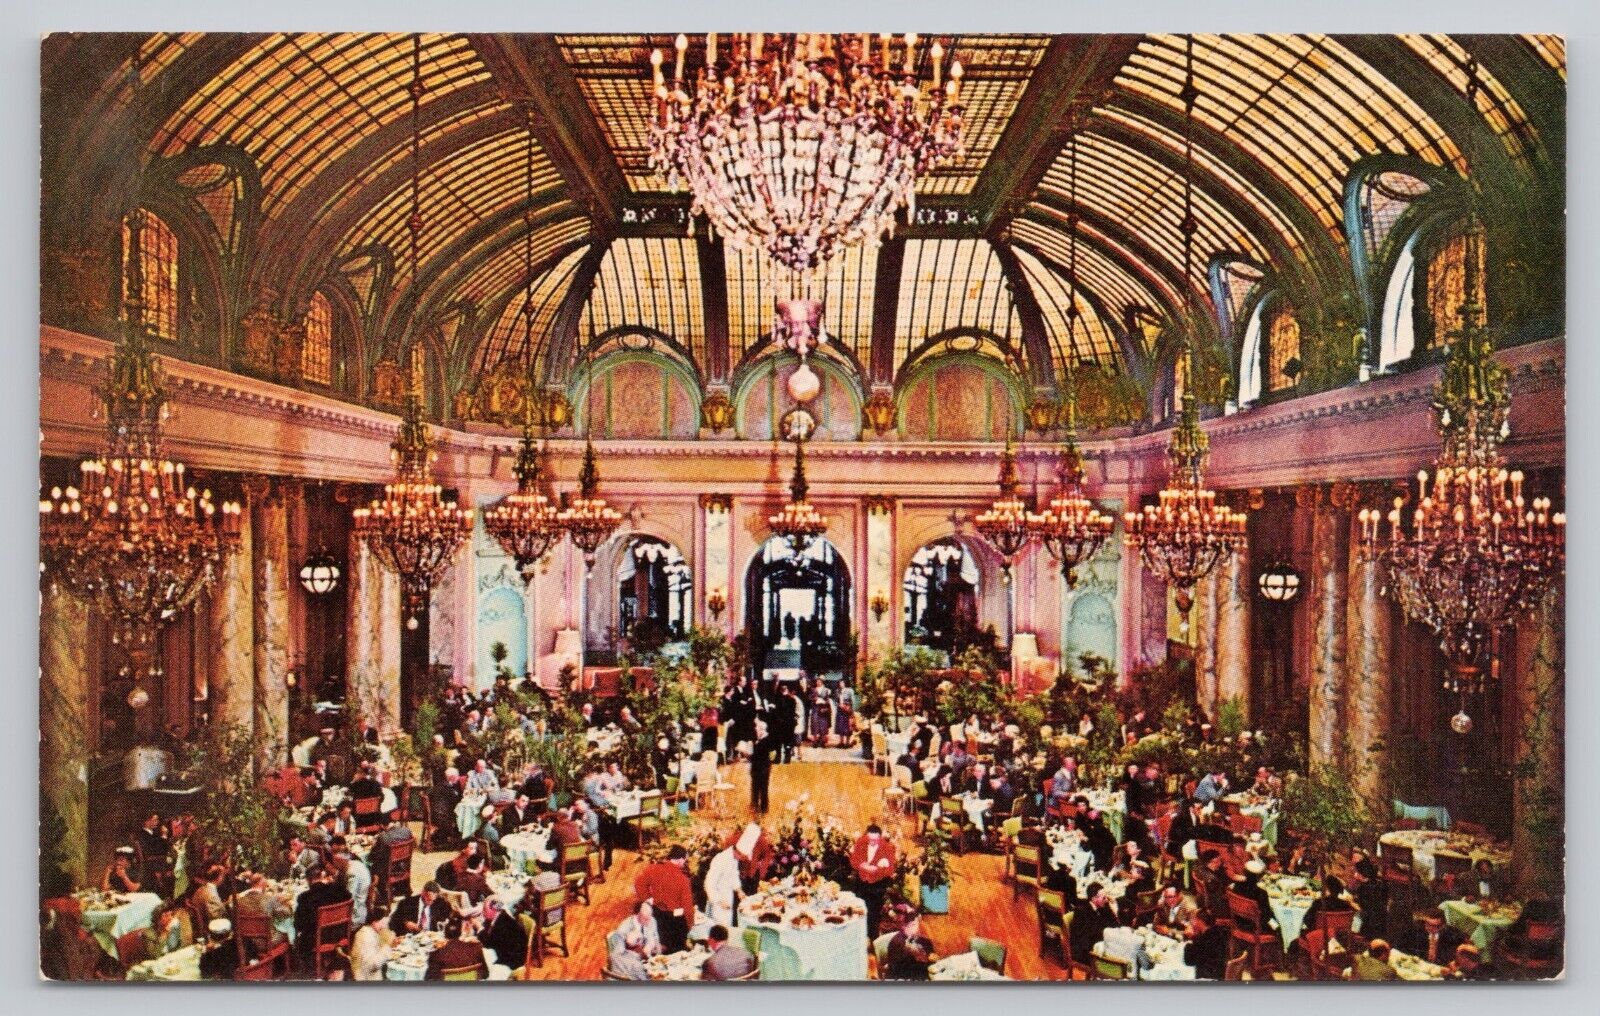 San Francisco California, Sheraton Palace Garden Court Dining Room, VTG Postcard